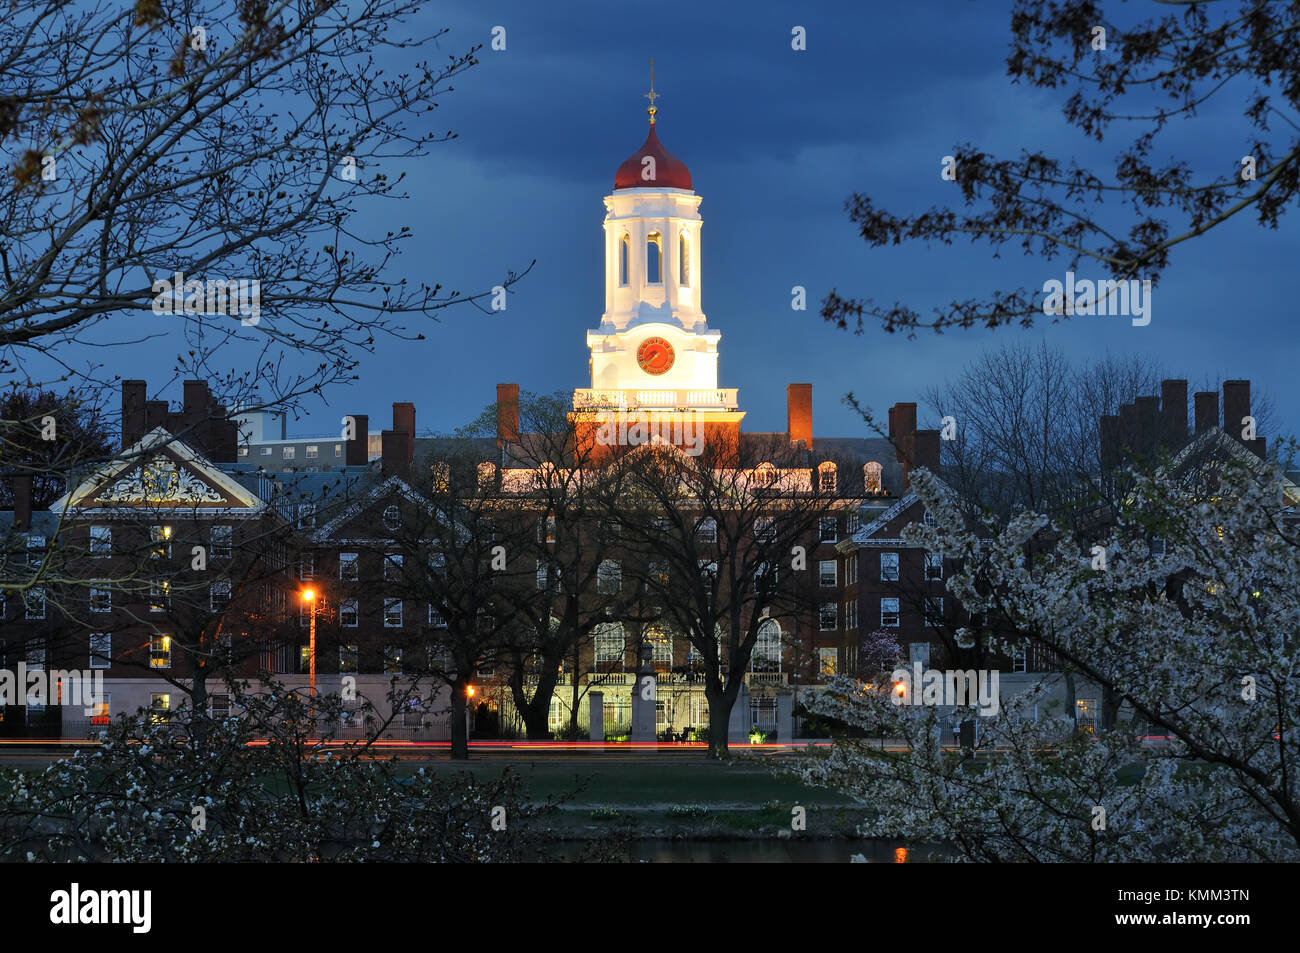 Harvard University bei Nacht. weissen Turm und rote Kuppel des dunster House, einem Studentenwohnheim Gebäude. Stockfoto